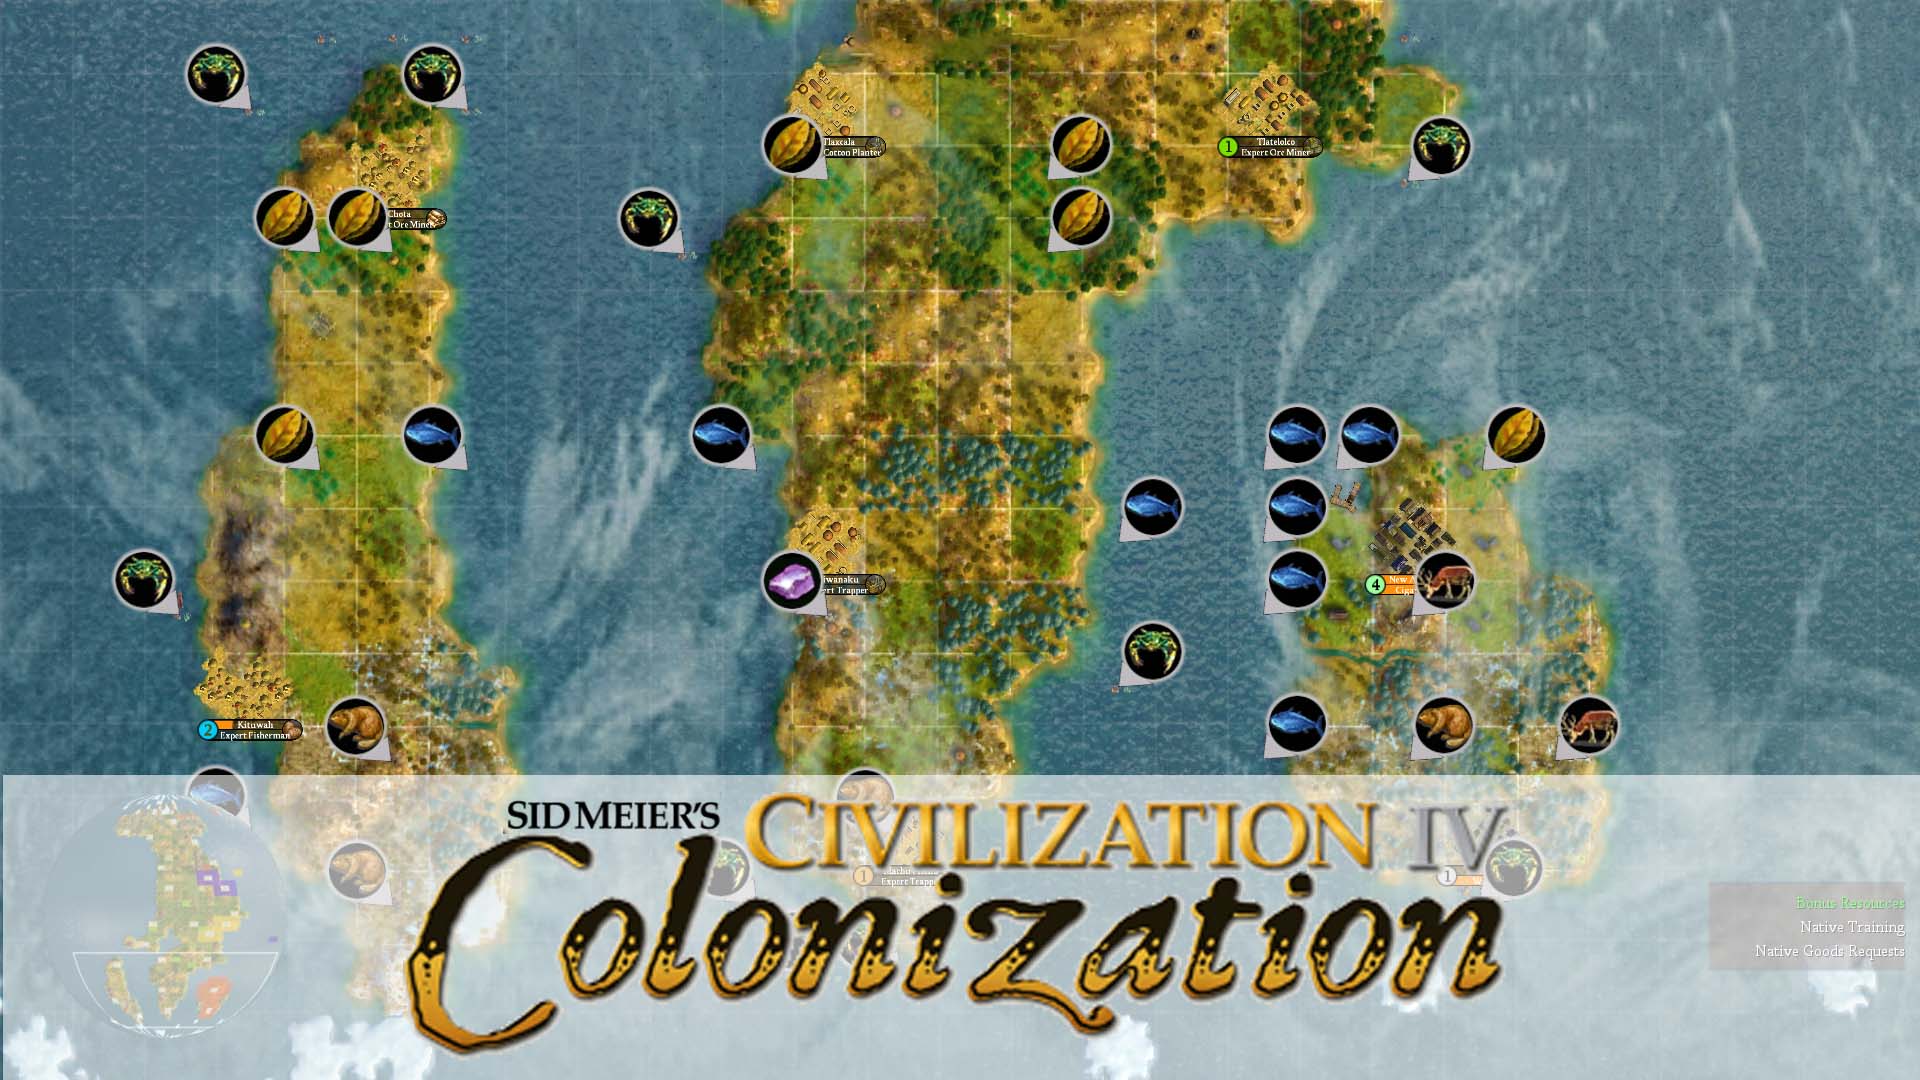 download civilization 4 colonization free full version